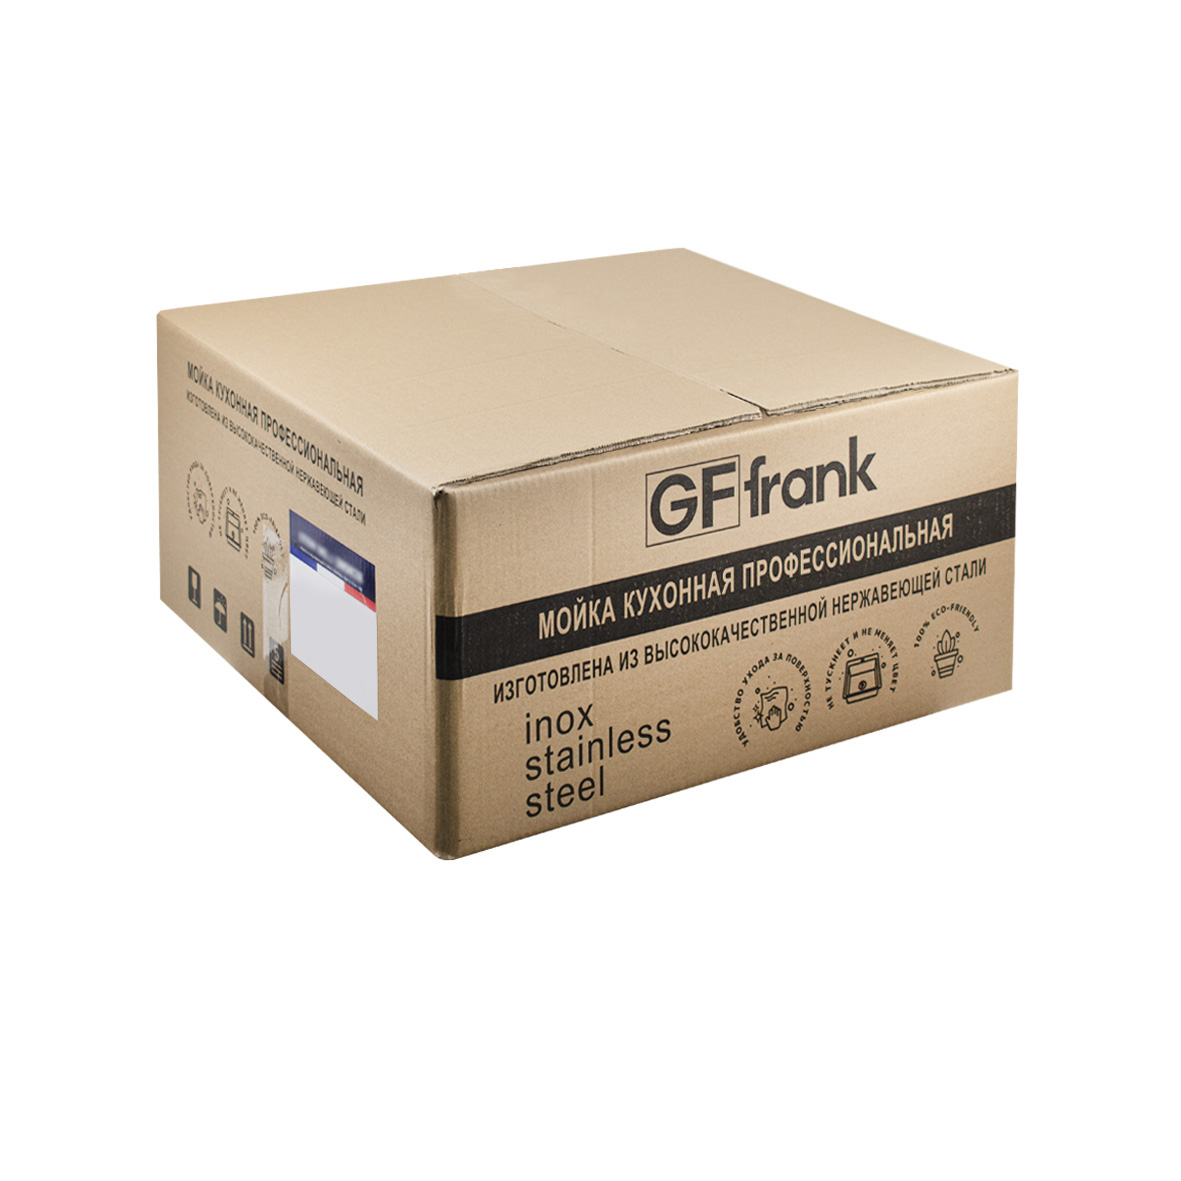 GFfrank - Мойка врезная 50х50 см цвет матовое золото, толщина 2,0 х 0,6 мм, глубина 200 мм + большой сифон с переливом